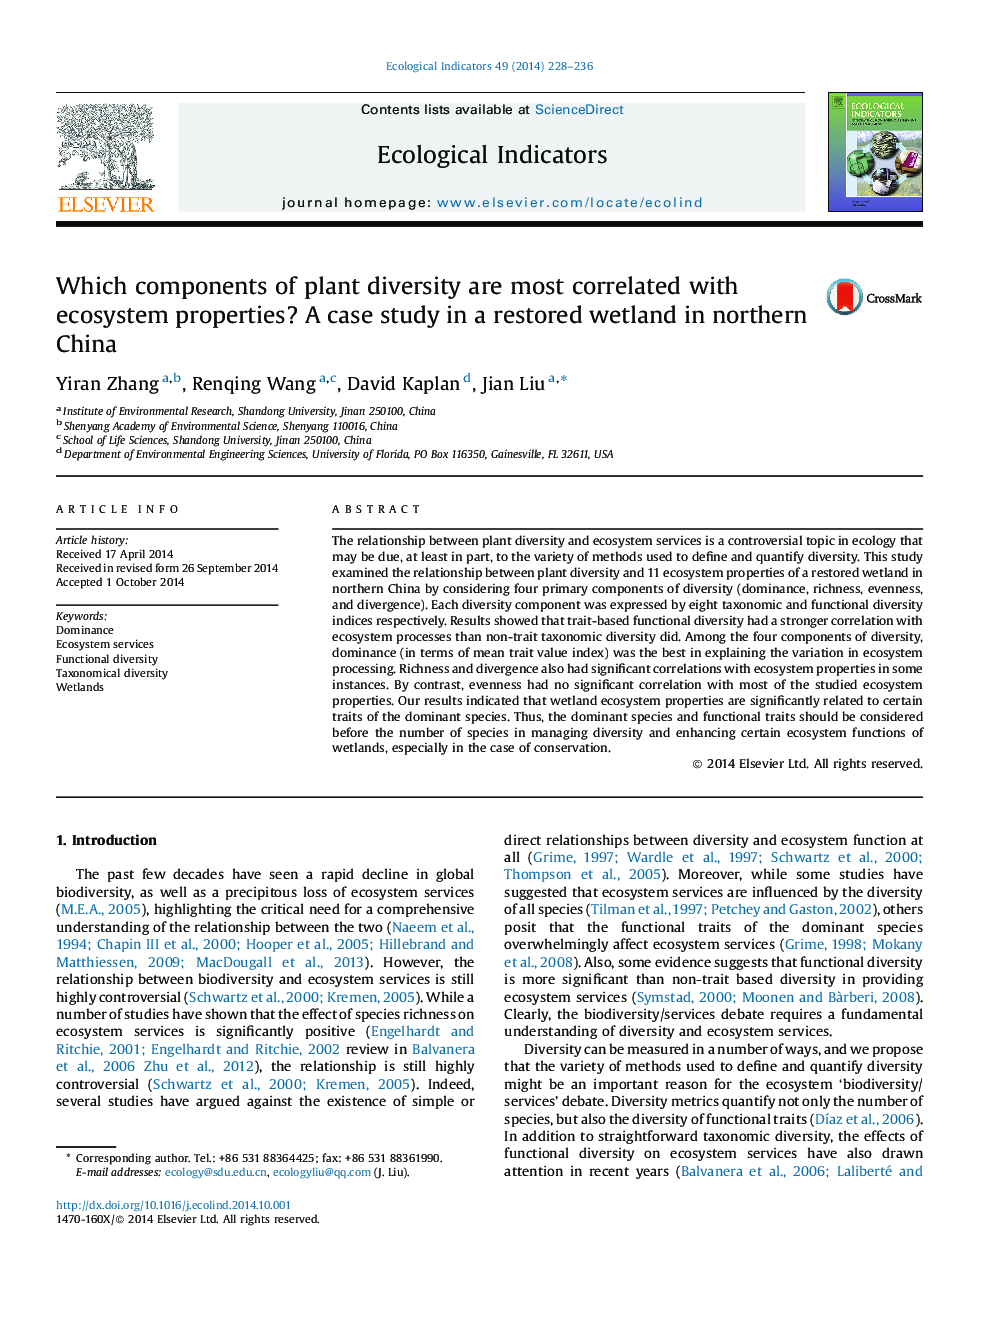 کدام مولفه های تنوع گیاهی بیشتر با خواص اکوسیستم مرتبط است؟ مطالعه موردی در یک تالاب مرطوب در شمال چین 